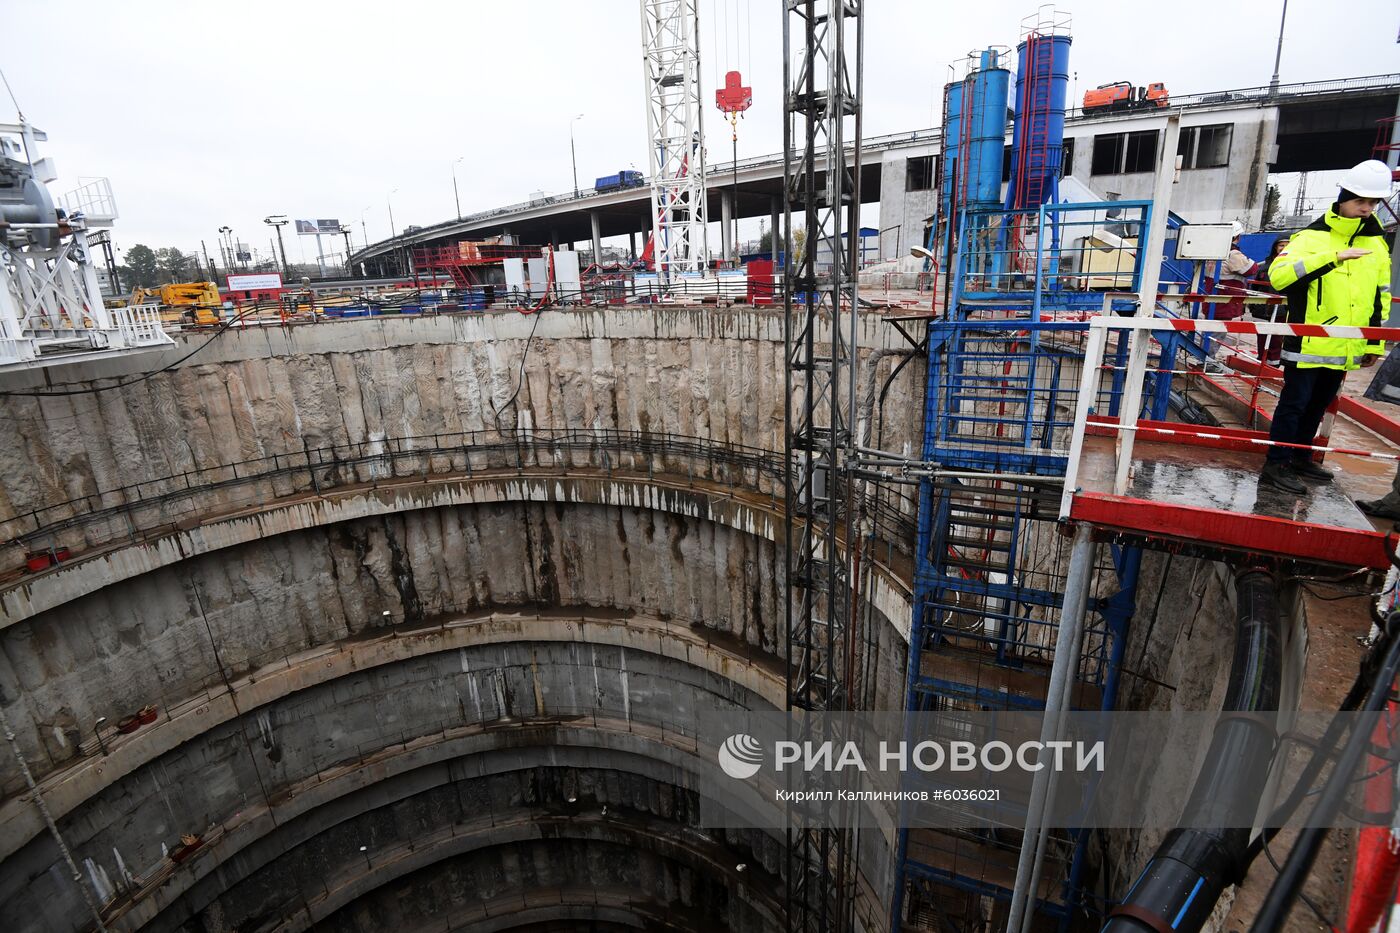 Строительство станции "Ржевская" Большой кольцевой линии метро